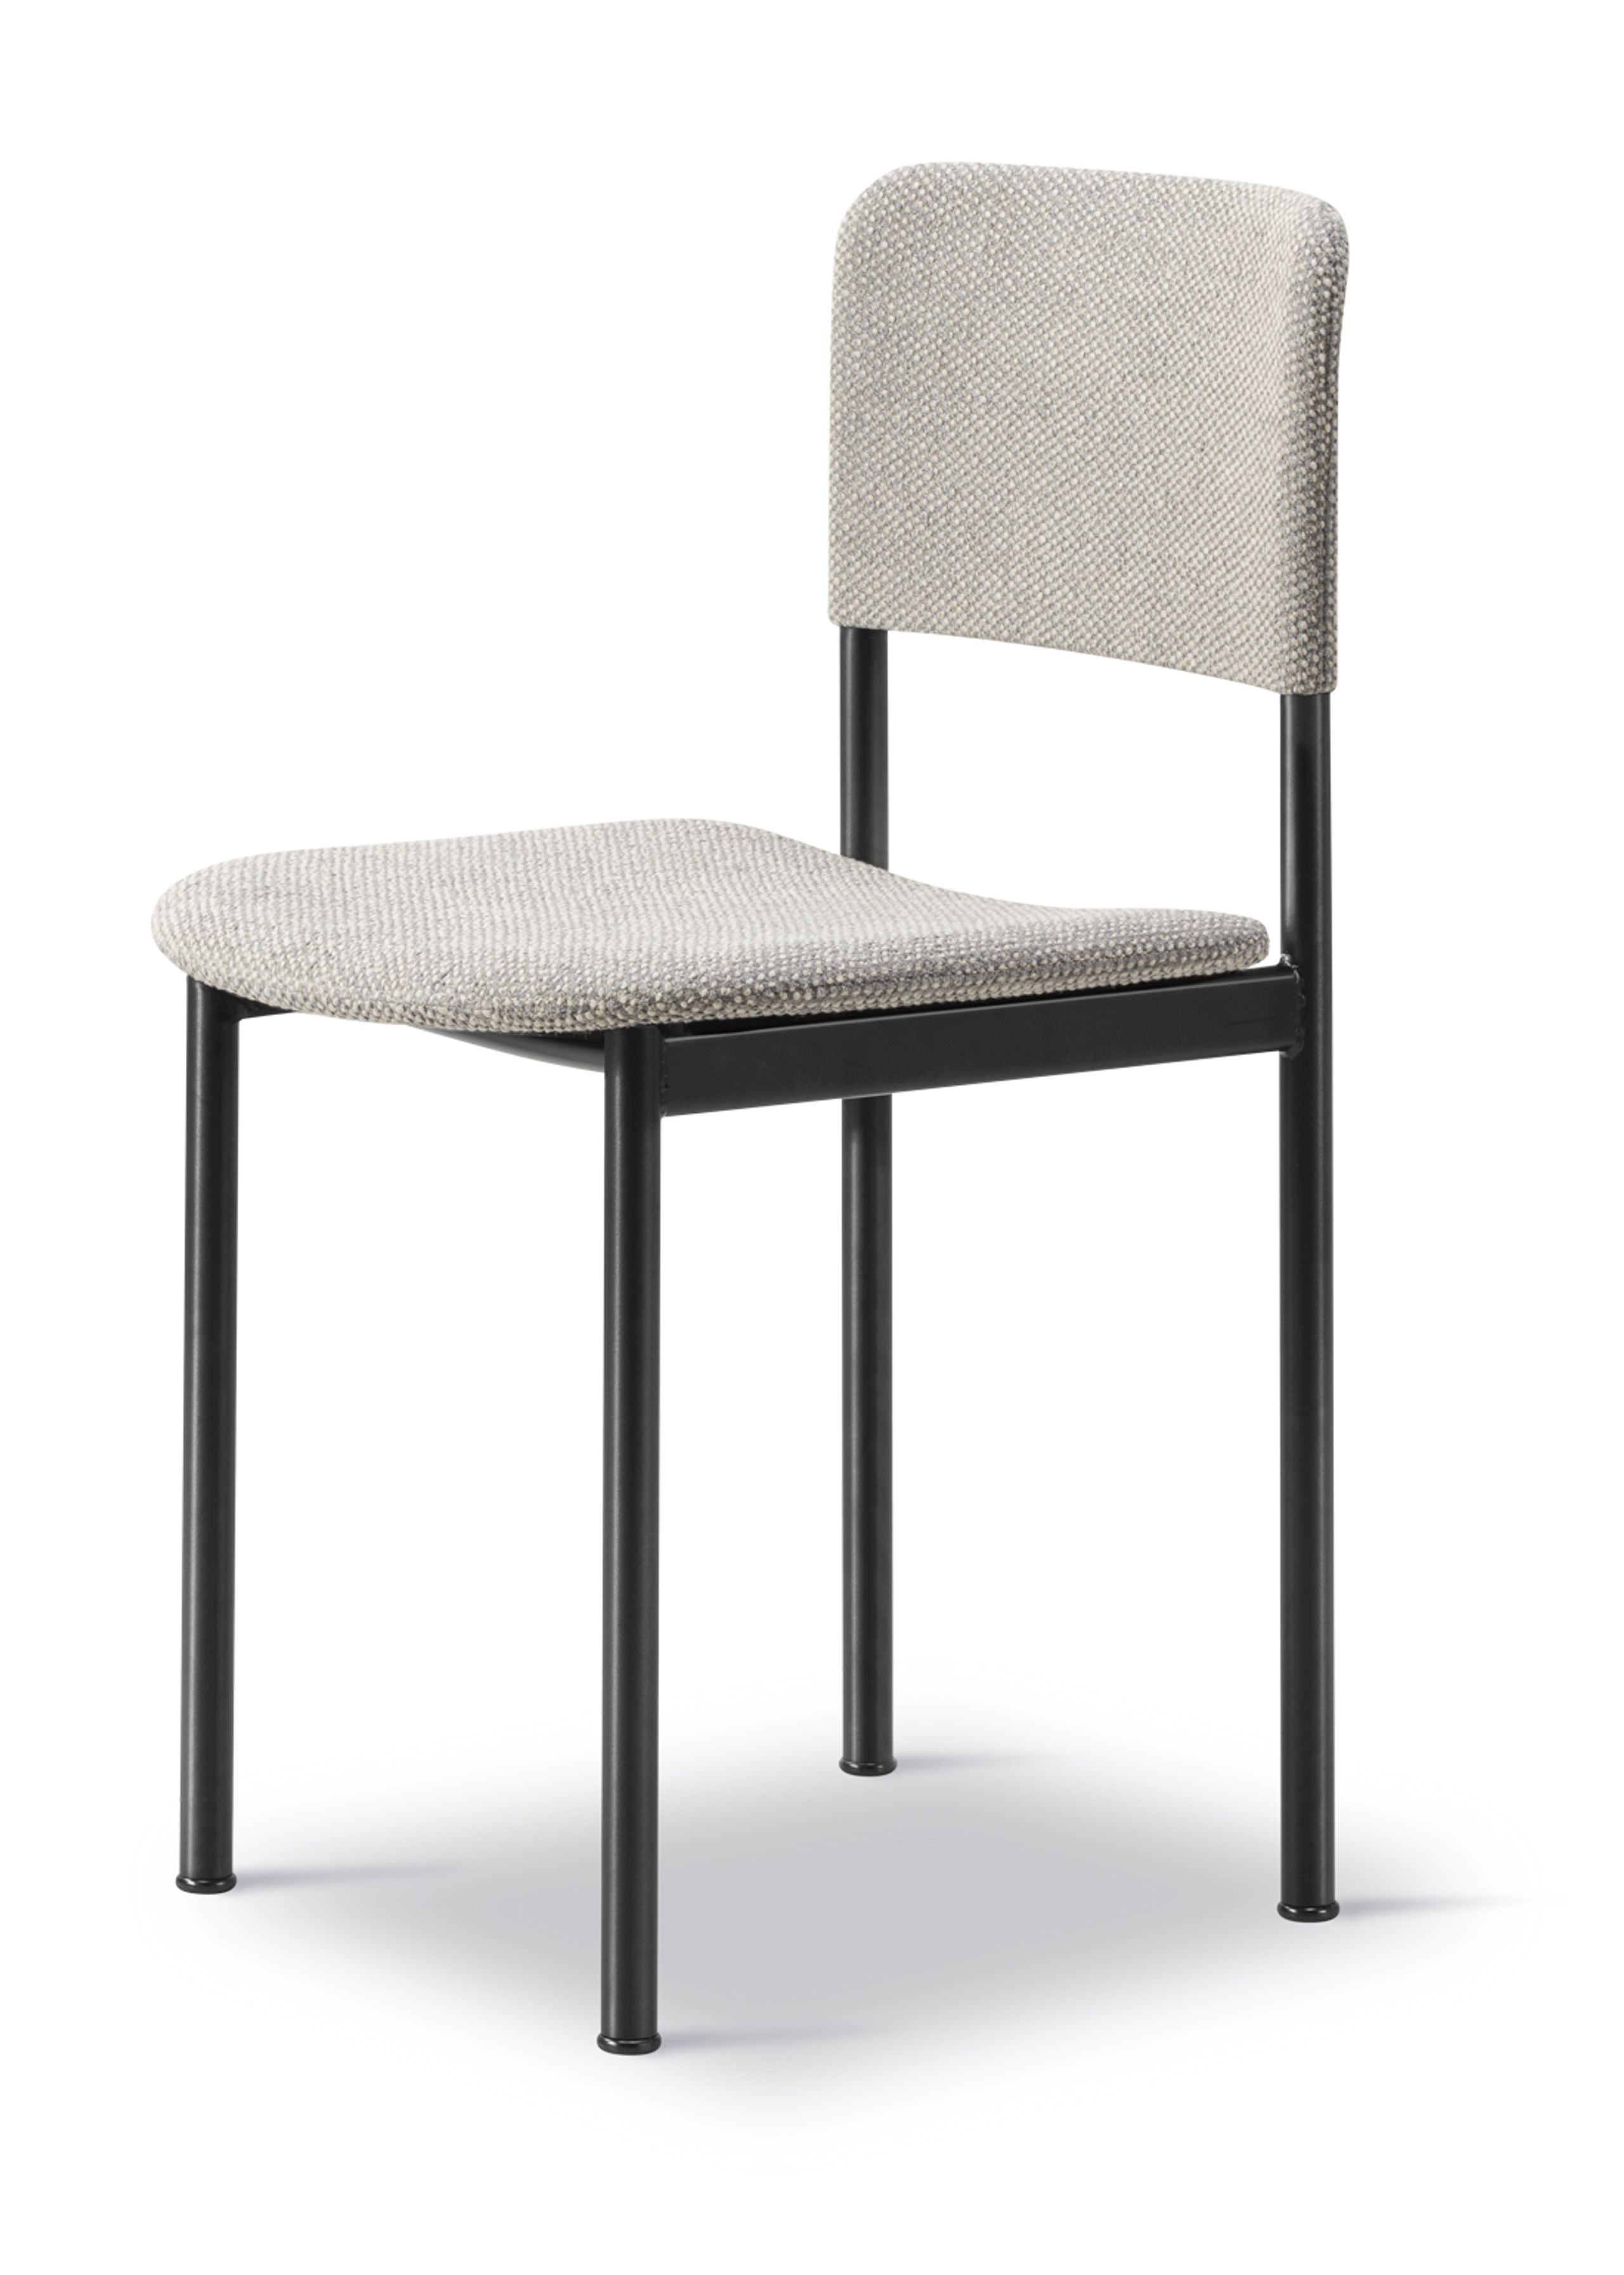 Fredericia Furniture - Spisebordsstol - Plan Chair 3414 by Edward Barber & Jay Osgerby - Safire 008 / Black